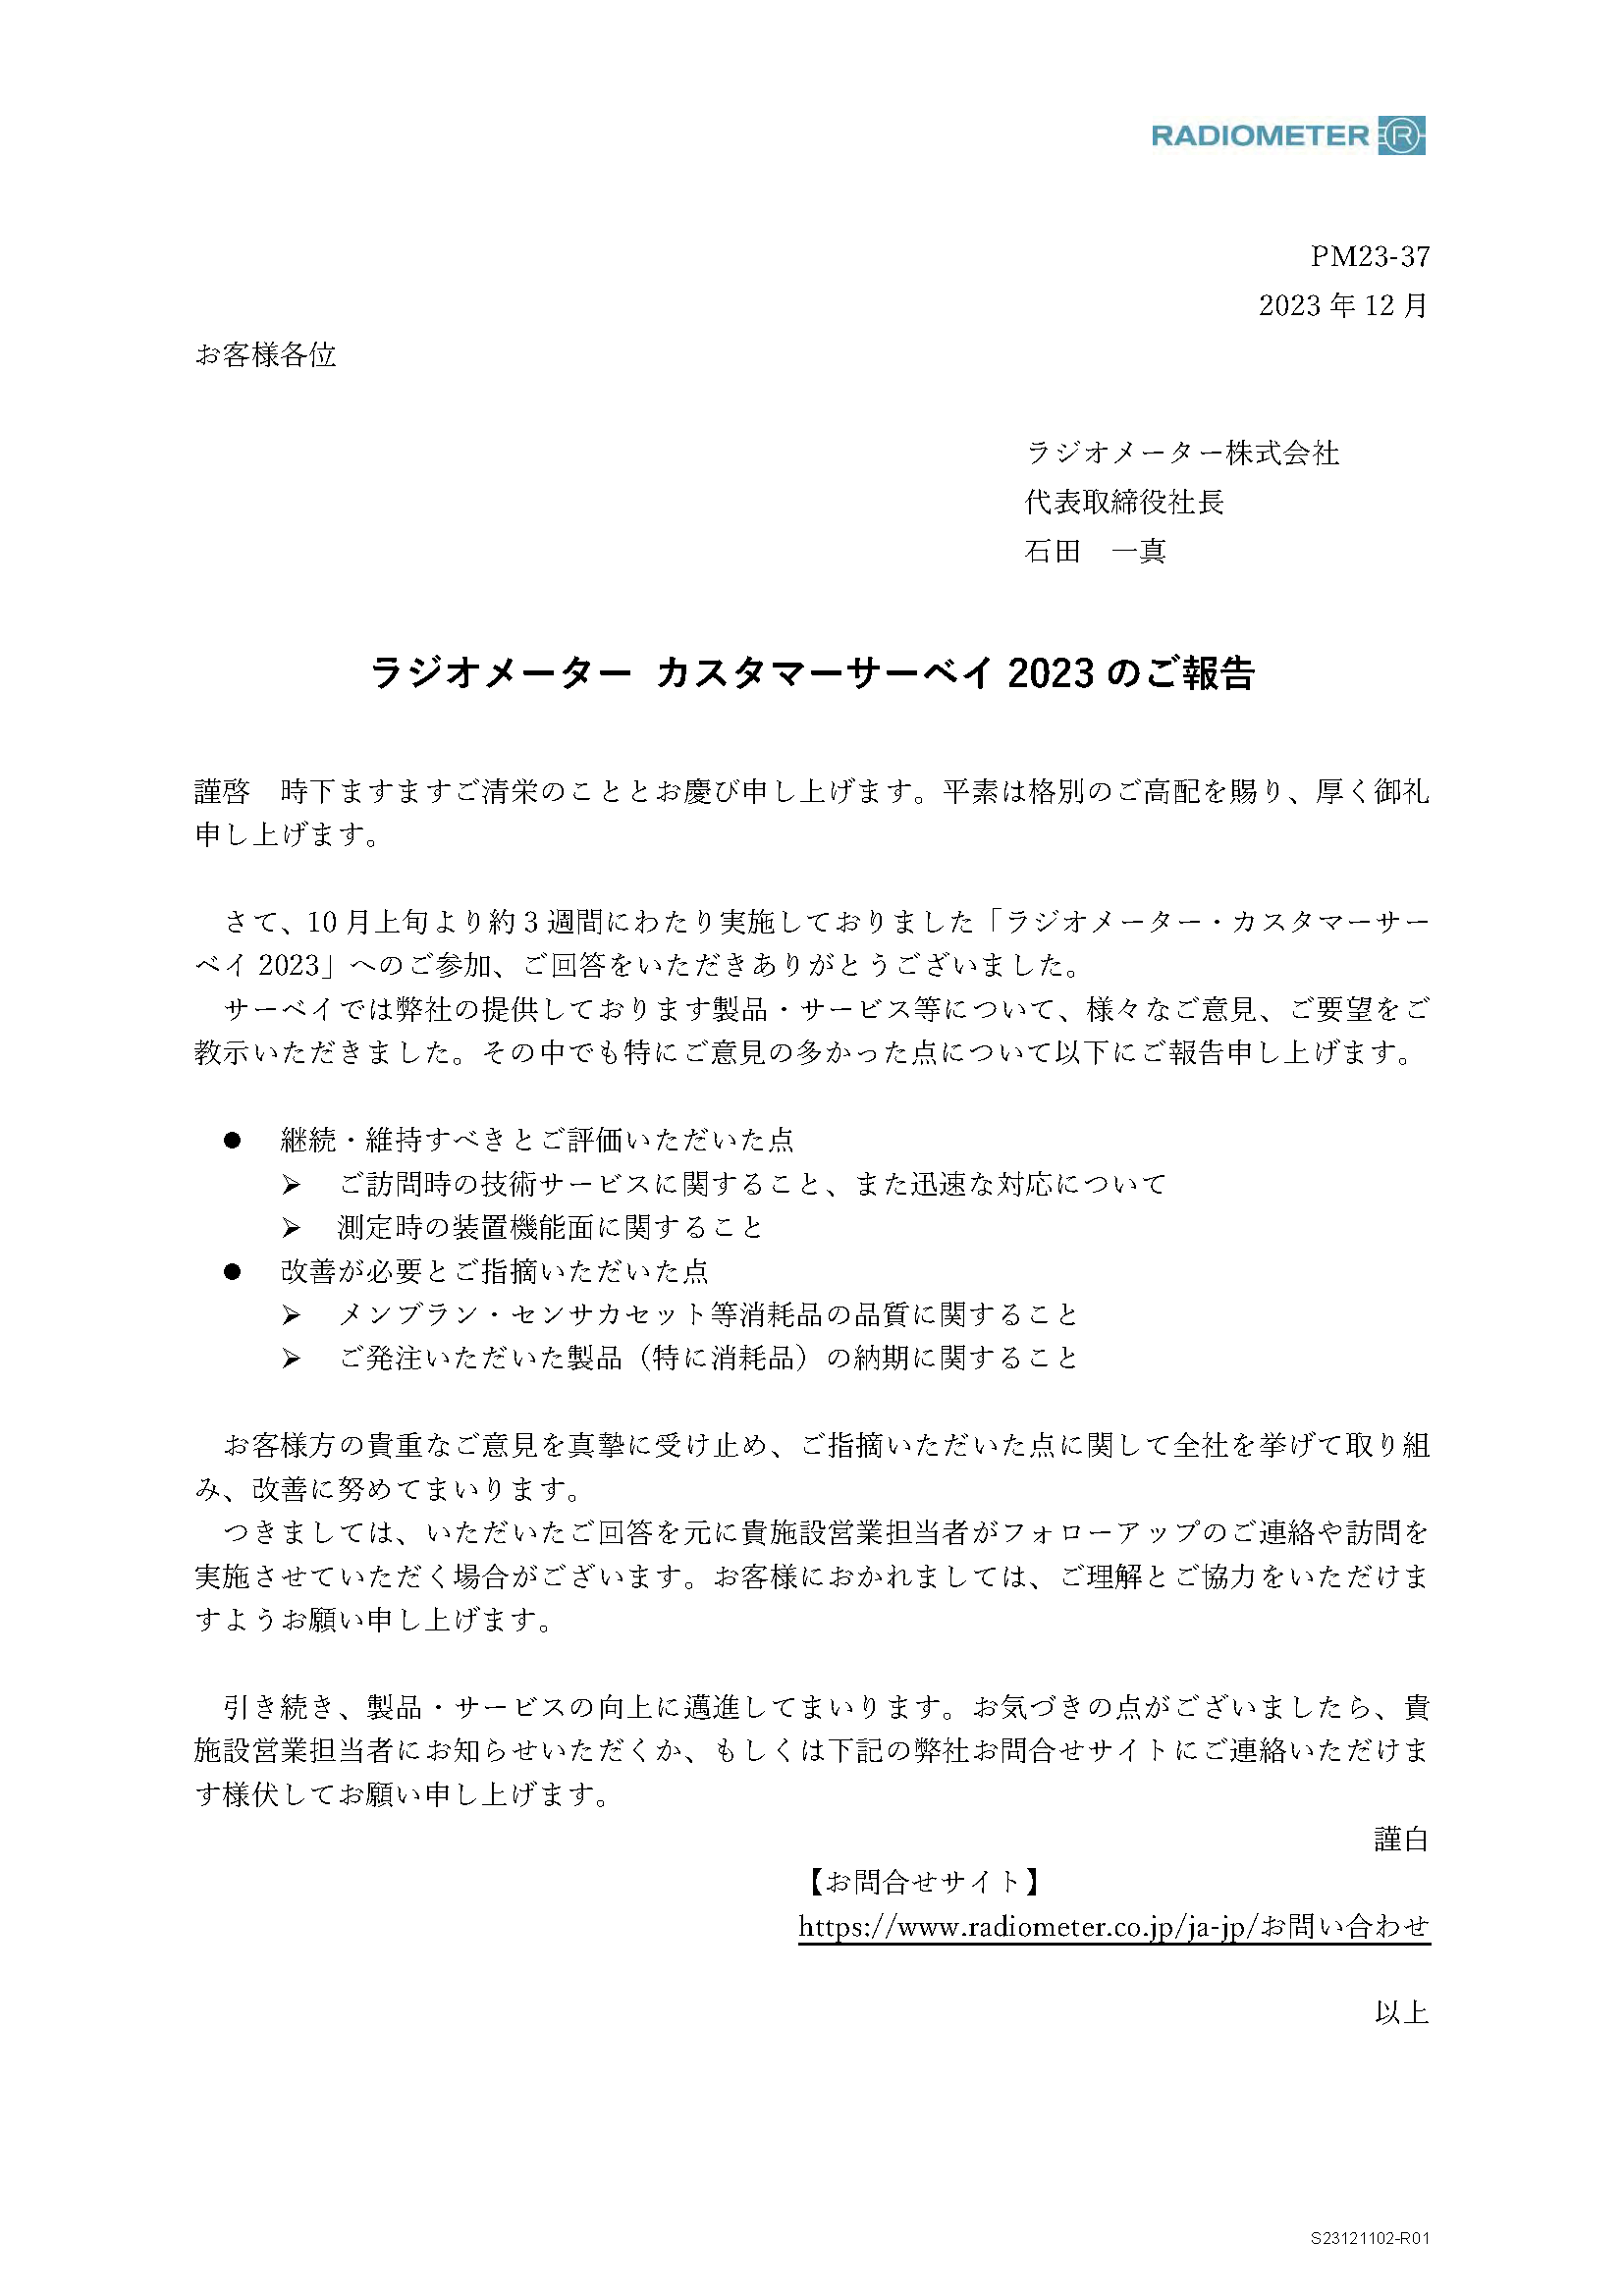 ラジオメーター顧客満足度調査_2023